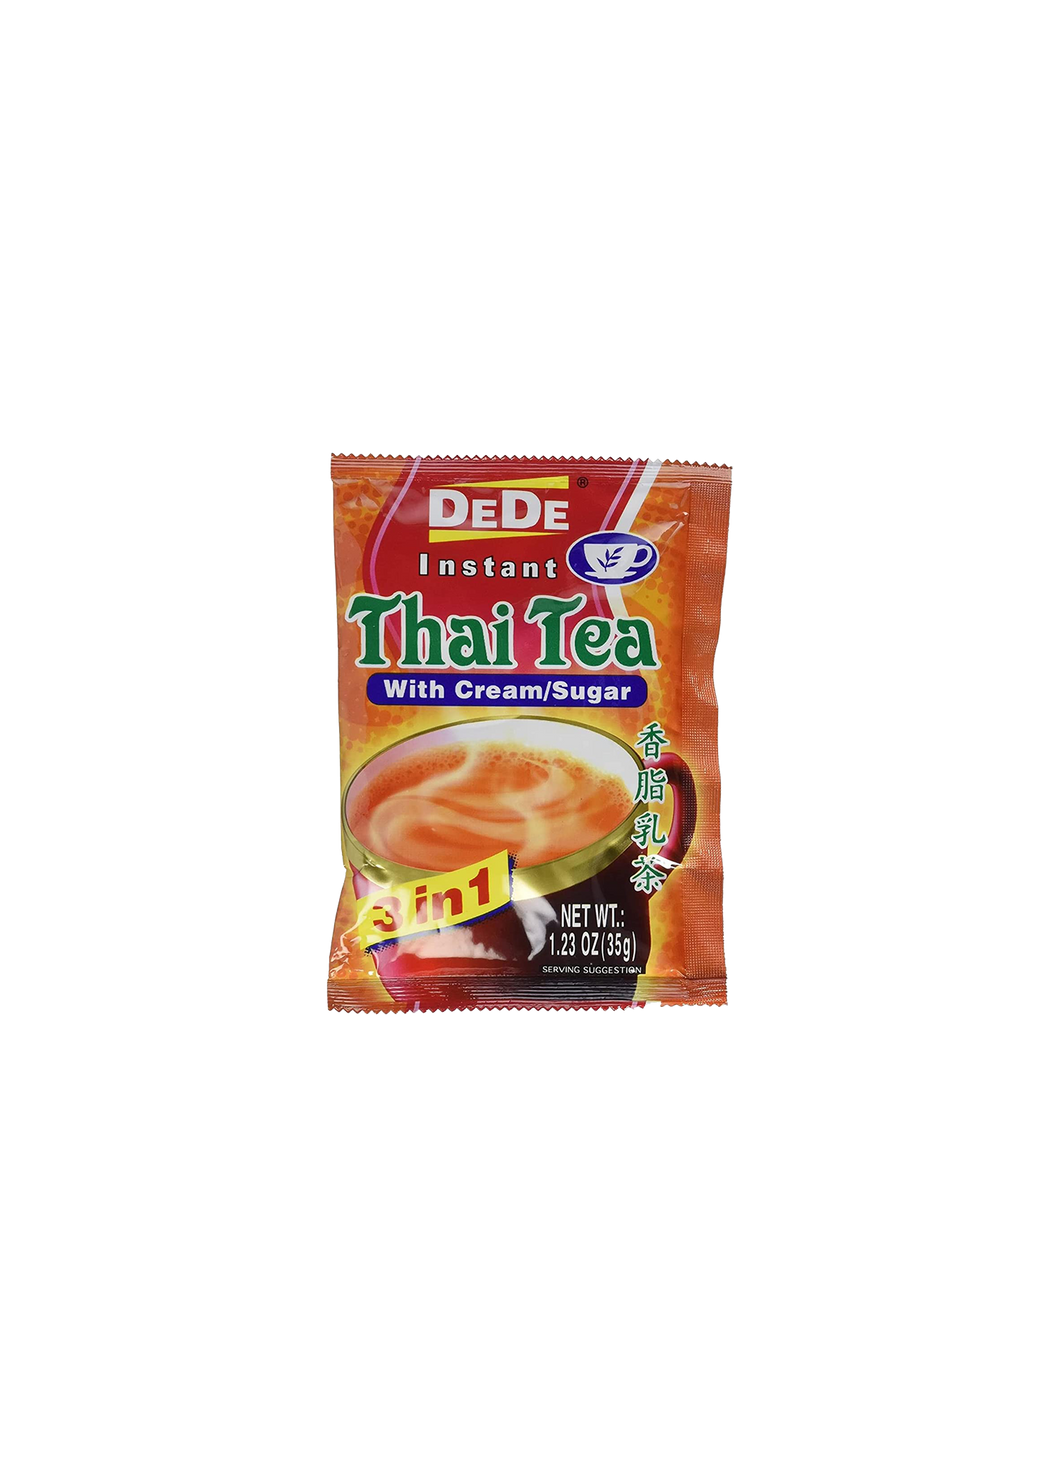 DeDe Instant Thai Tea with cream/sugar 35g